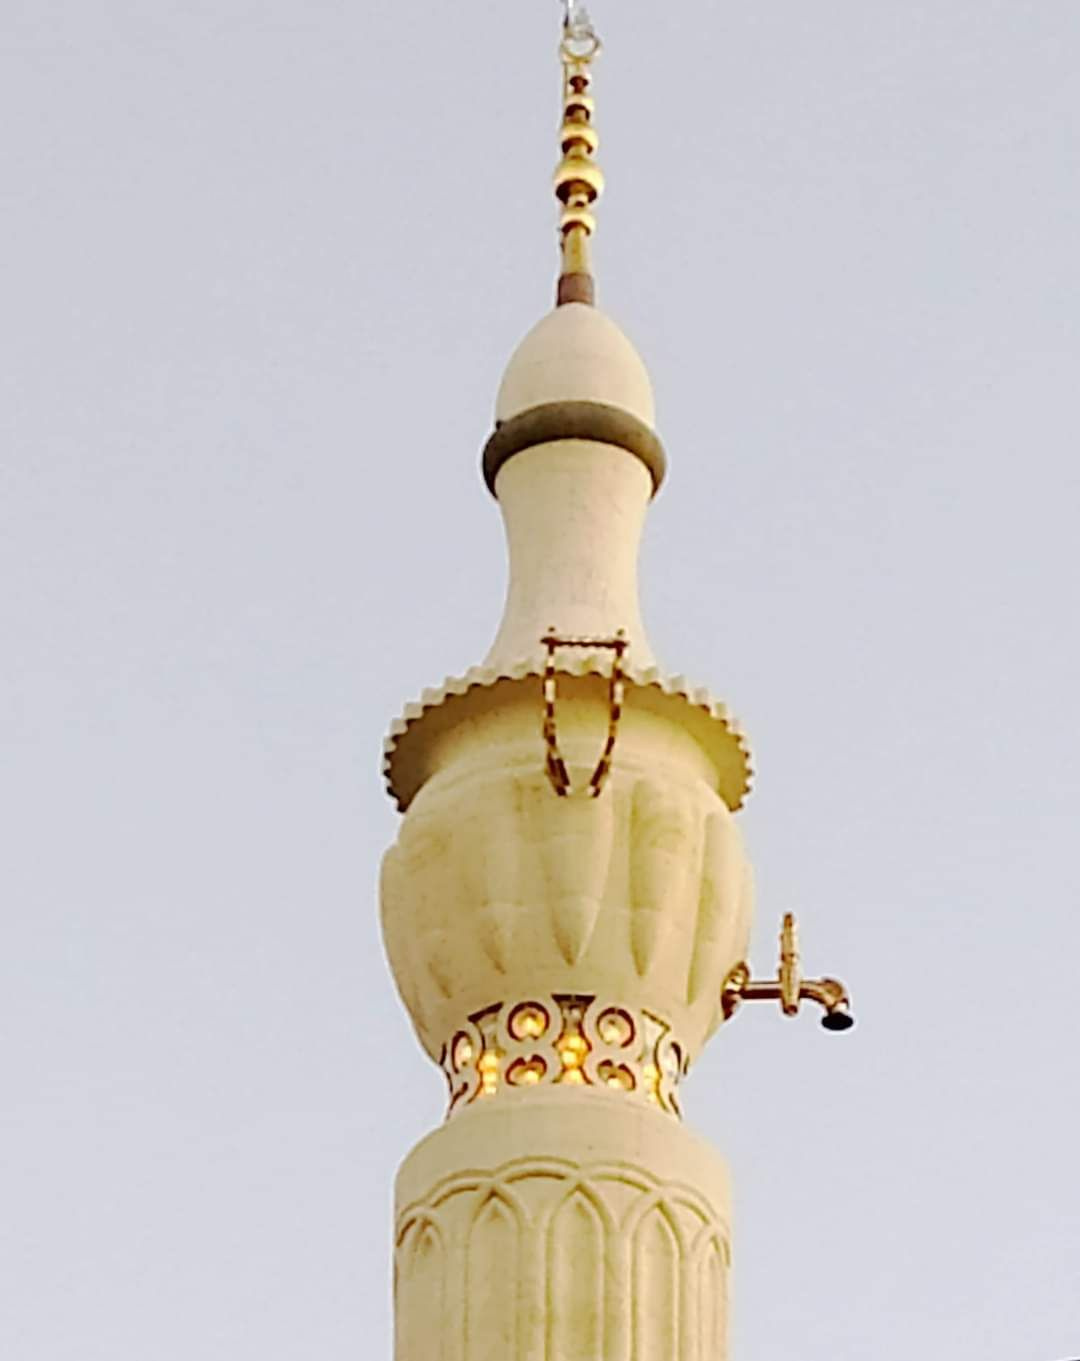 Böyle minare mi olur! Minarenin tepesini 'semaver'e çevirip musluk taktılar 35 yılda bitirildi